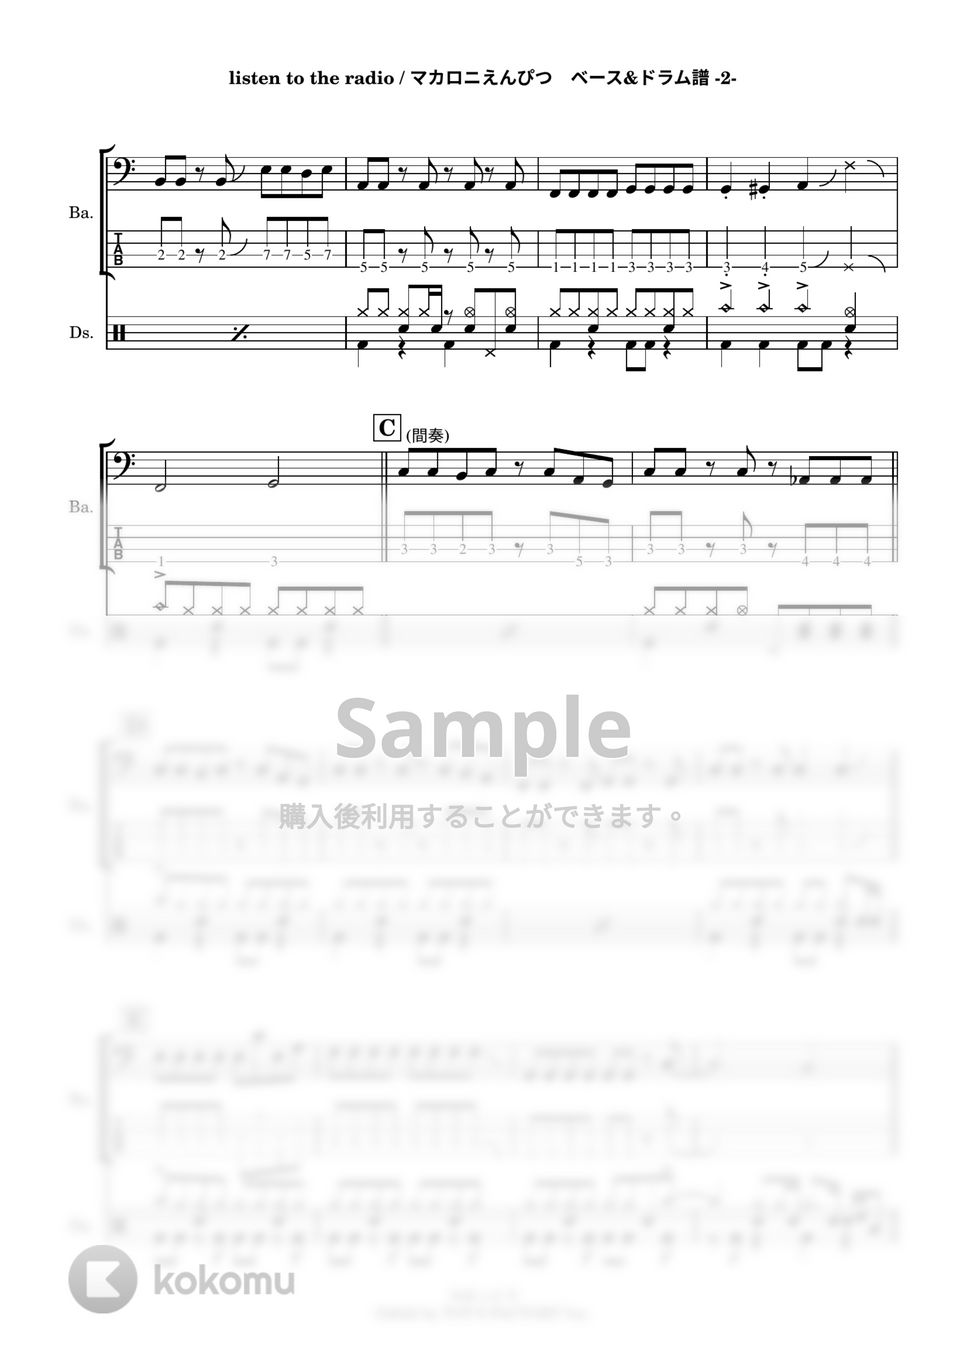 マカロニえんぴつ - listen to the radio (ベースtab譜＆ドラム譜 mscz + midi) by 鈴木建作